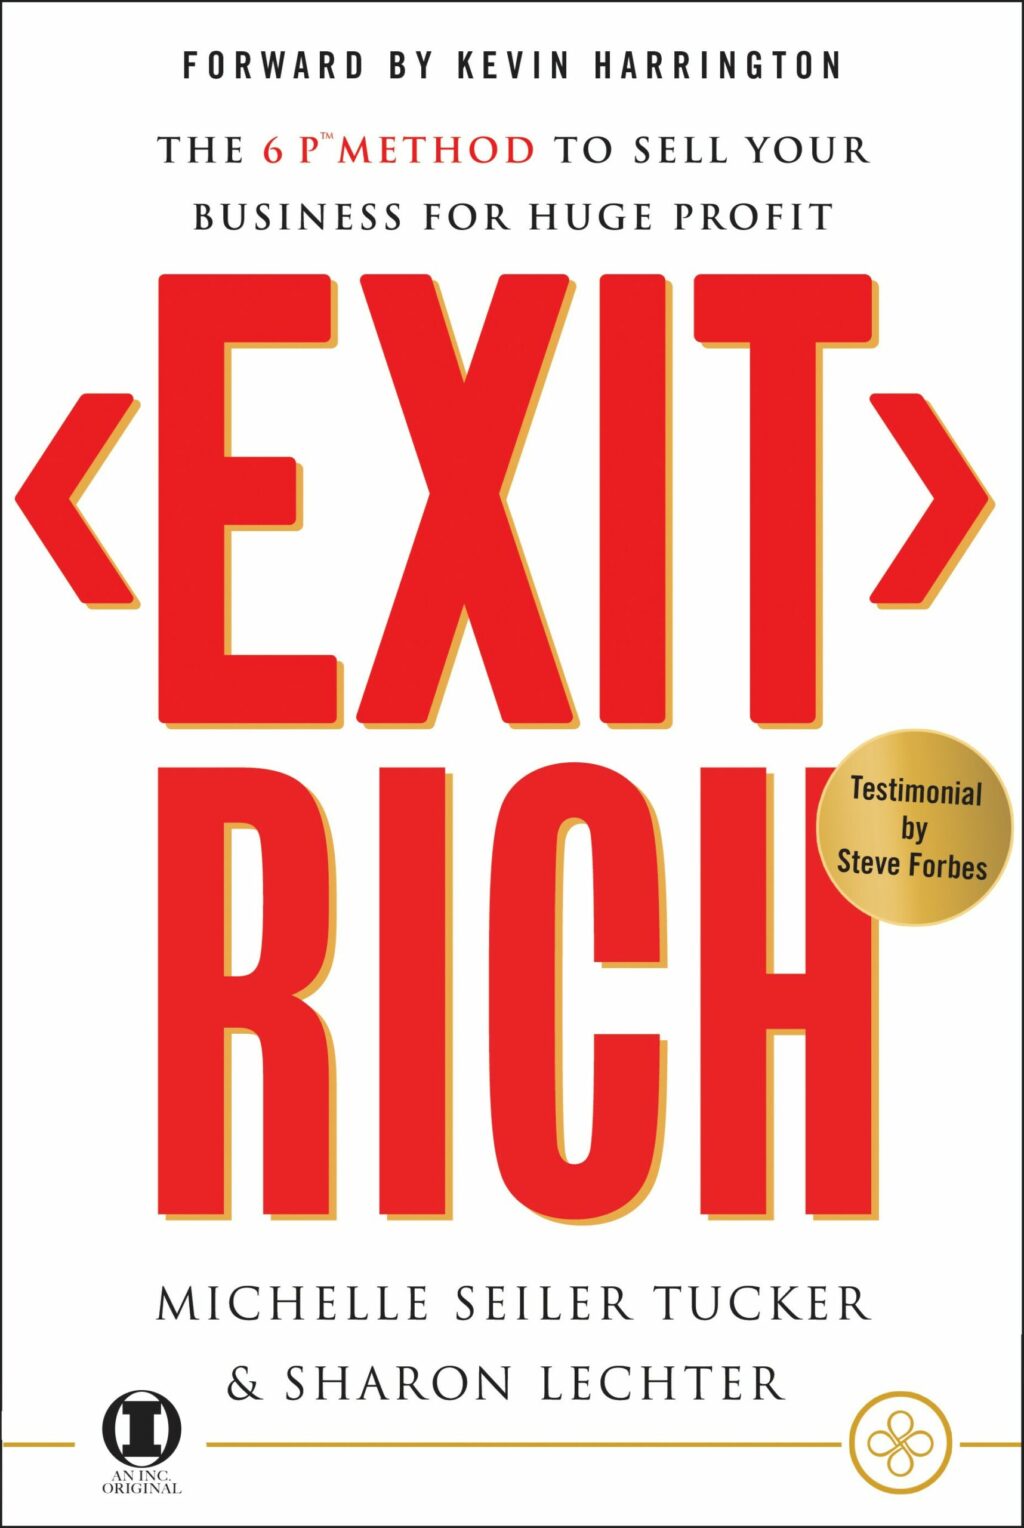 Exit Rich